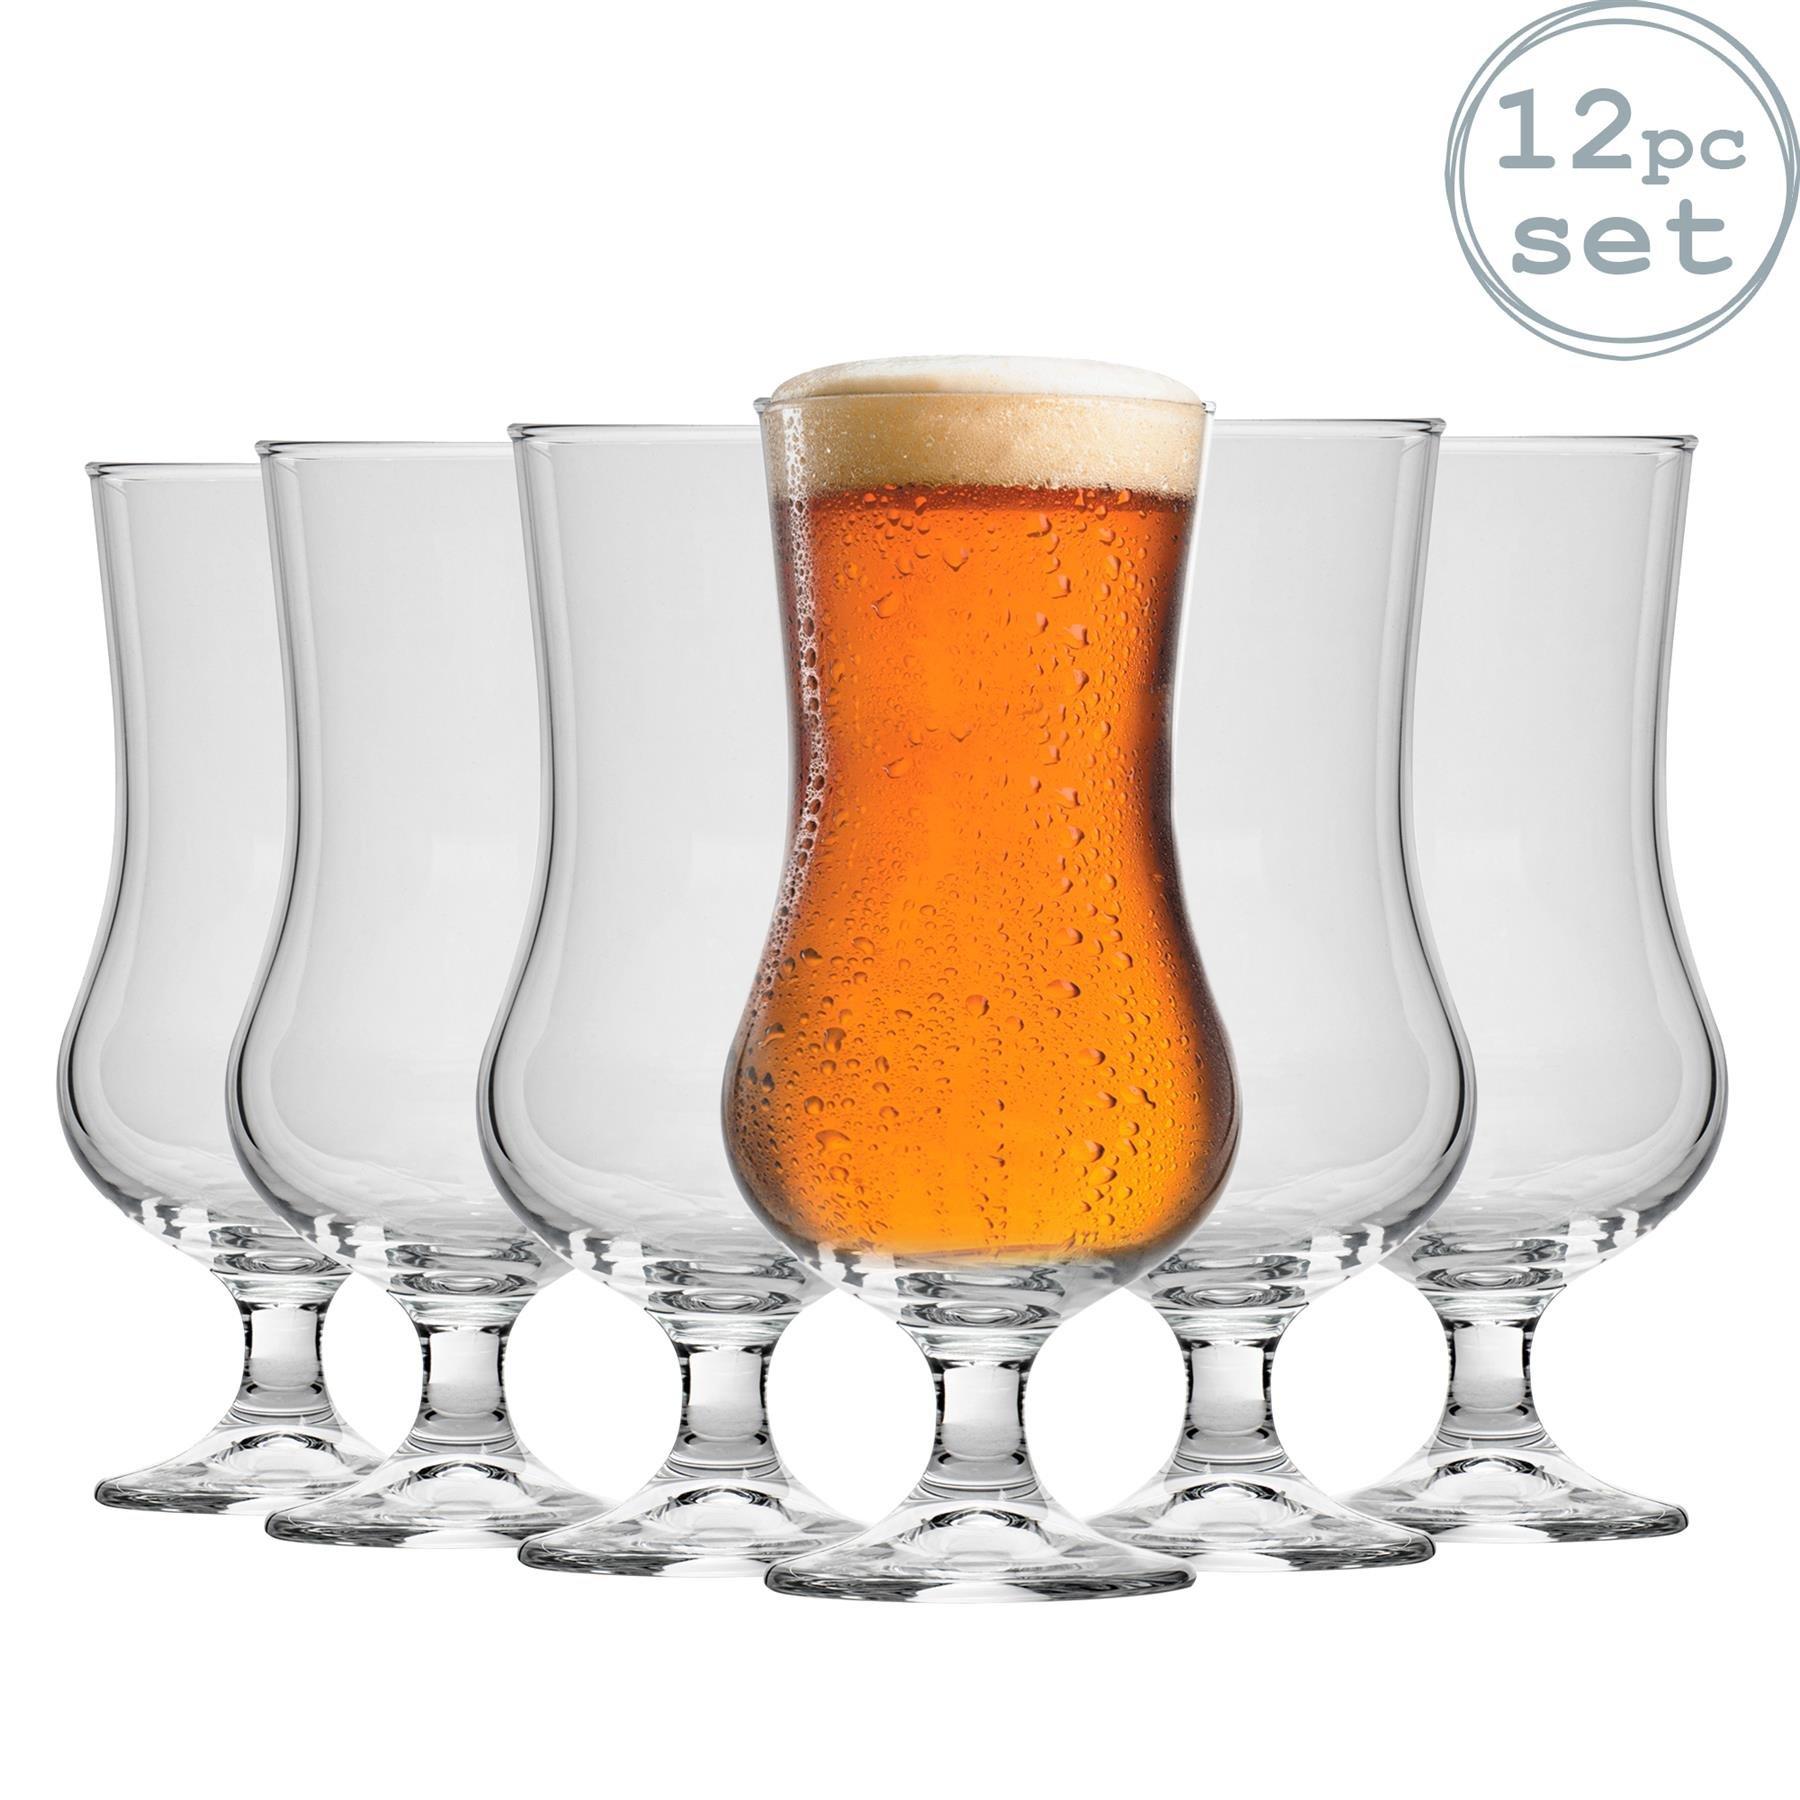 Ale Hurricane Beer Glasses - 500ml - Pack of 12